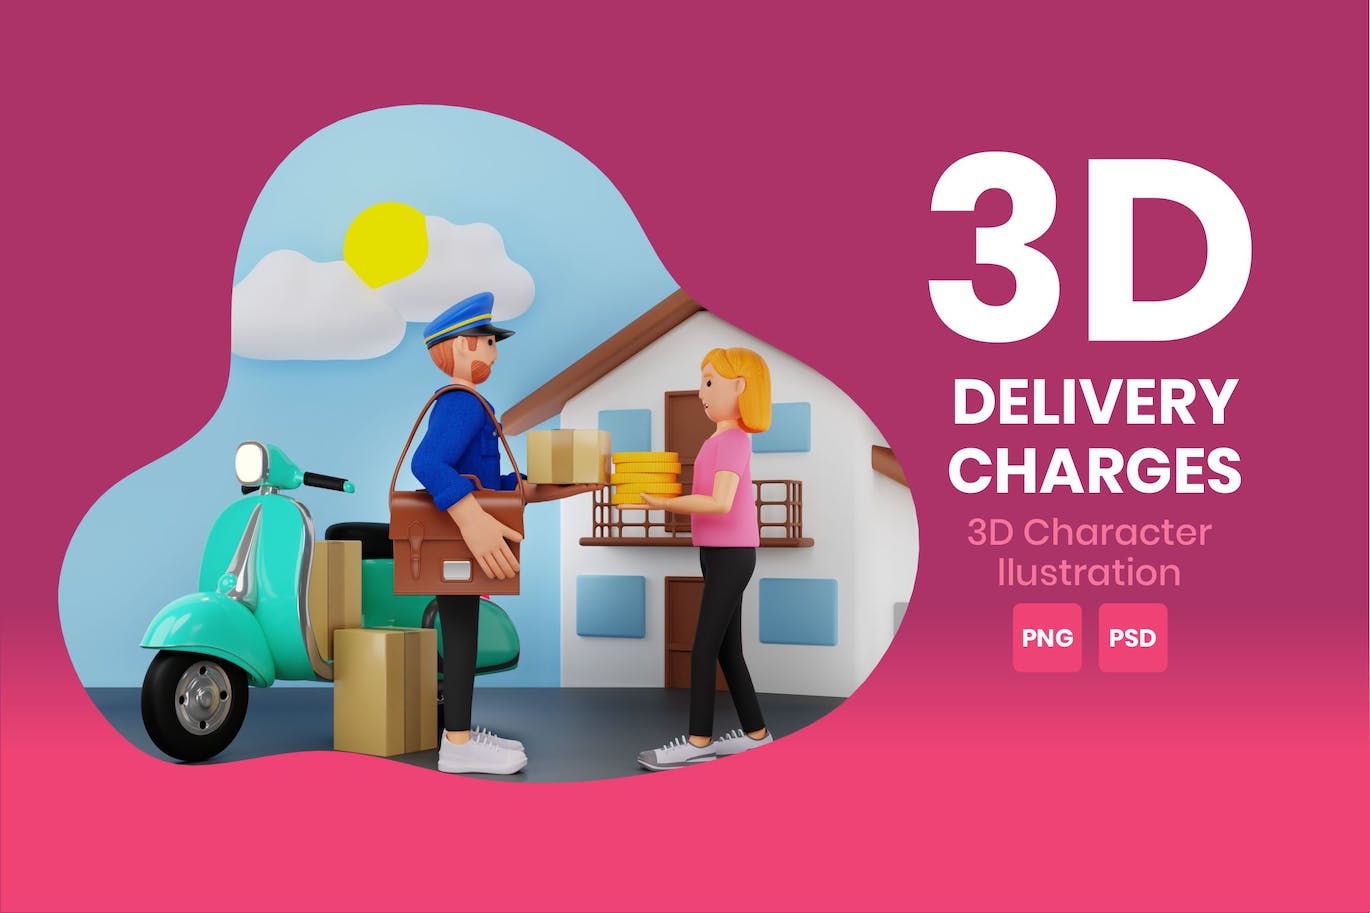 配送费用3D角色插画素材 Delivery Charges 3D Character Illustration 图片素材 第1张